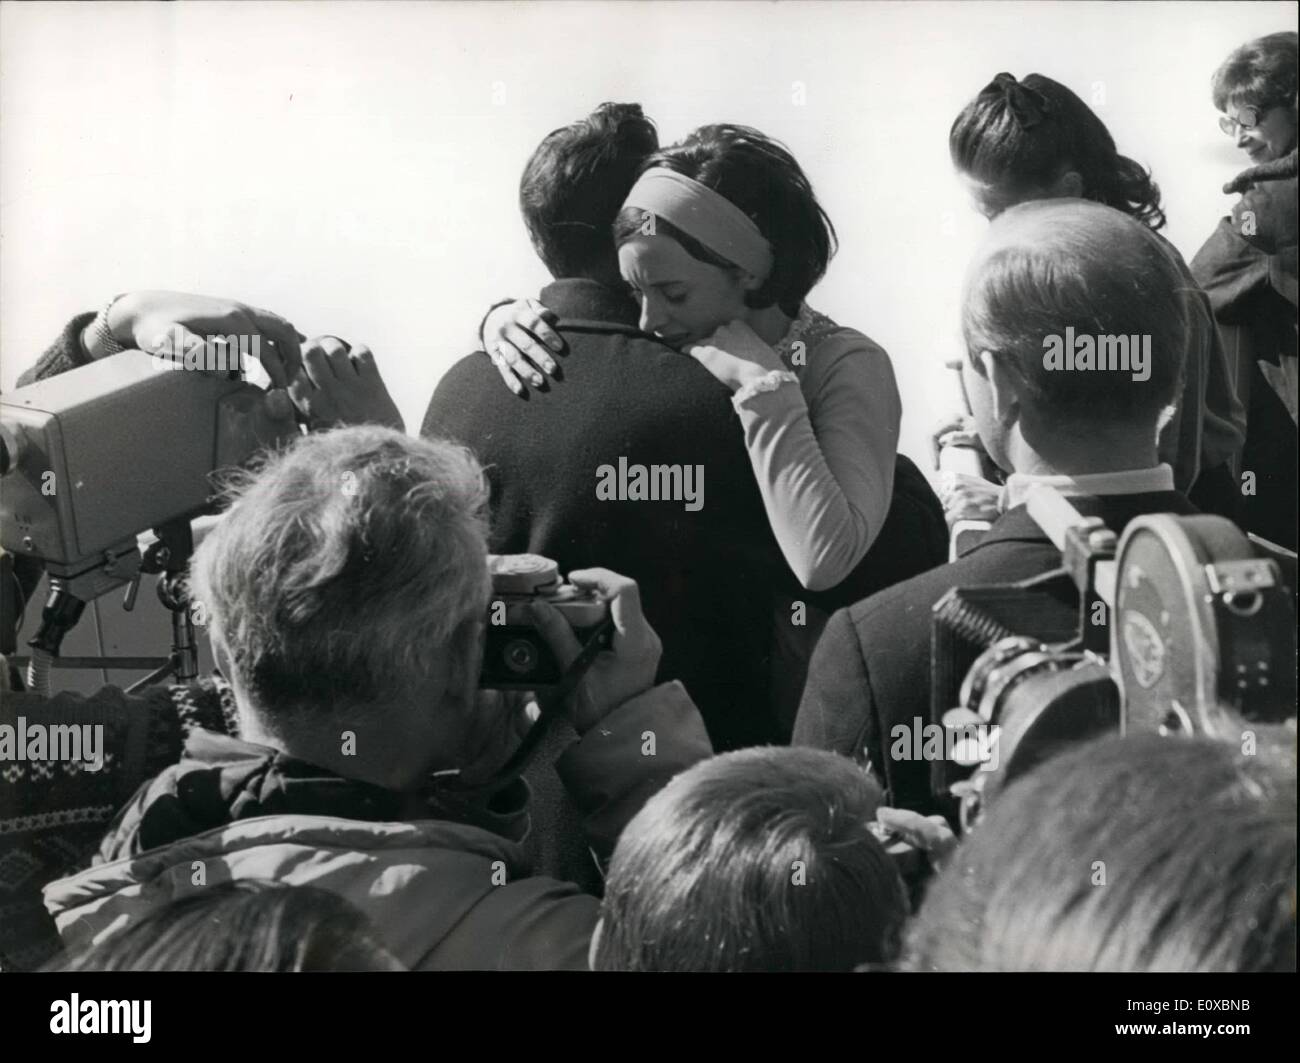 Febbraio 02, 1966 - Il mondo di pattinaggio di figura di campionato a Davos, in Svizzera il campione del mondo di Peggy Fleming dopo l'esecuzione. Foto Stock